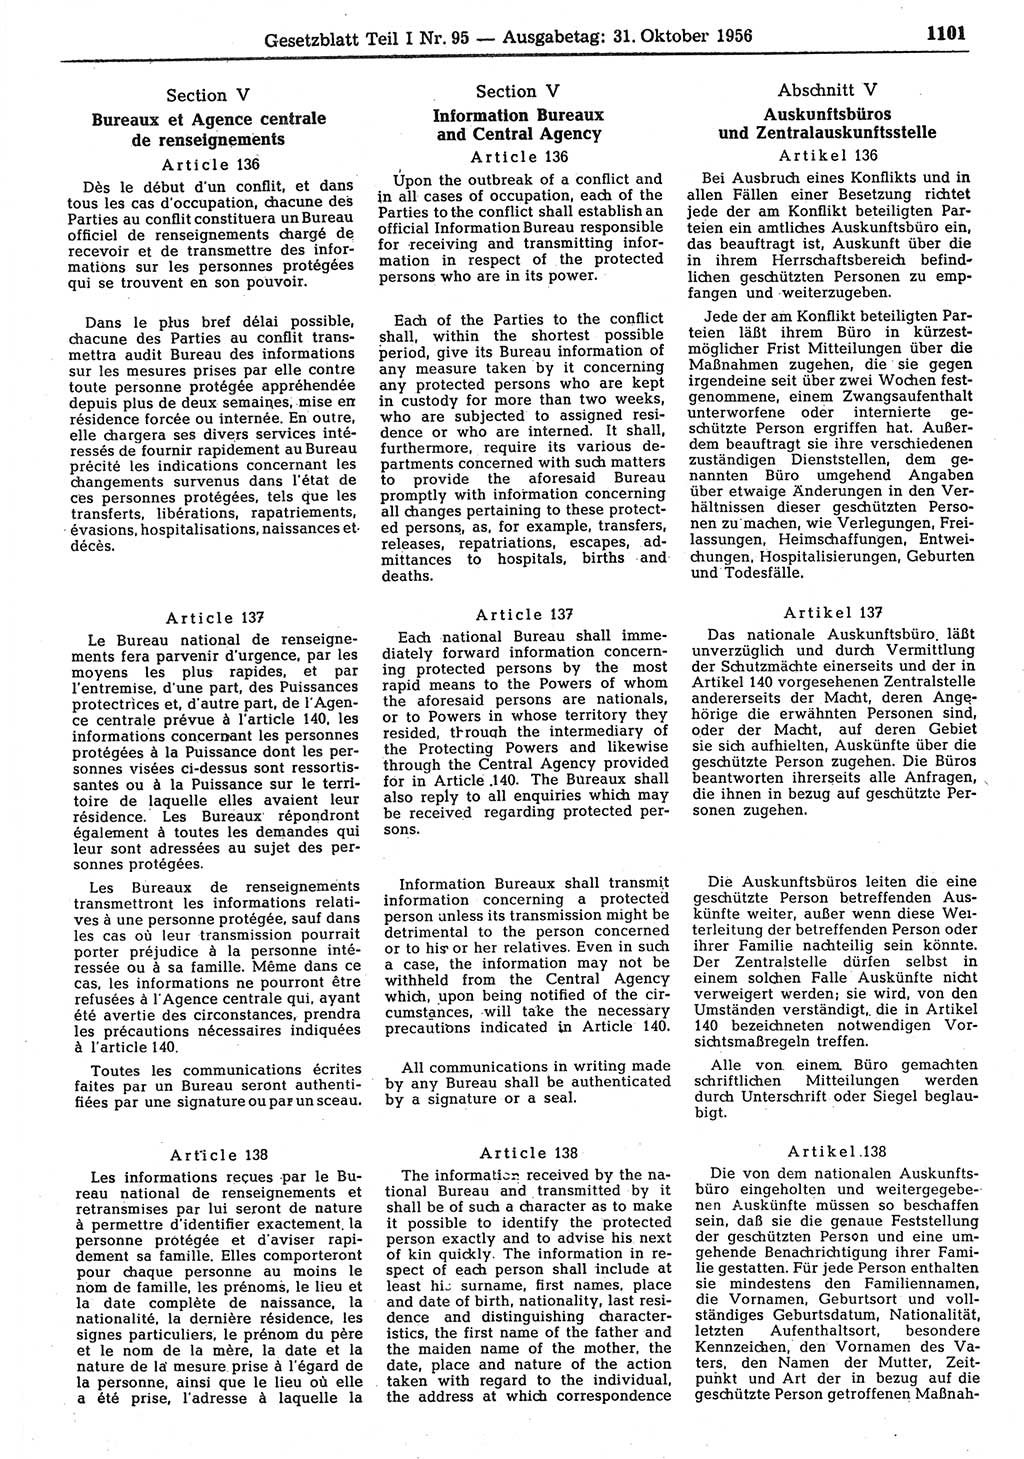 Gesetzblatt (GBl.) der Deutschen Demokratischen Republik (DDR) Teil Ⅰ 1956, Seite 1101 (GBl. DDR Ⅰ 1956, S. 1101)